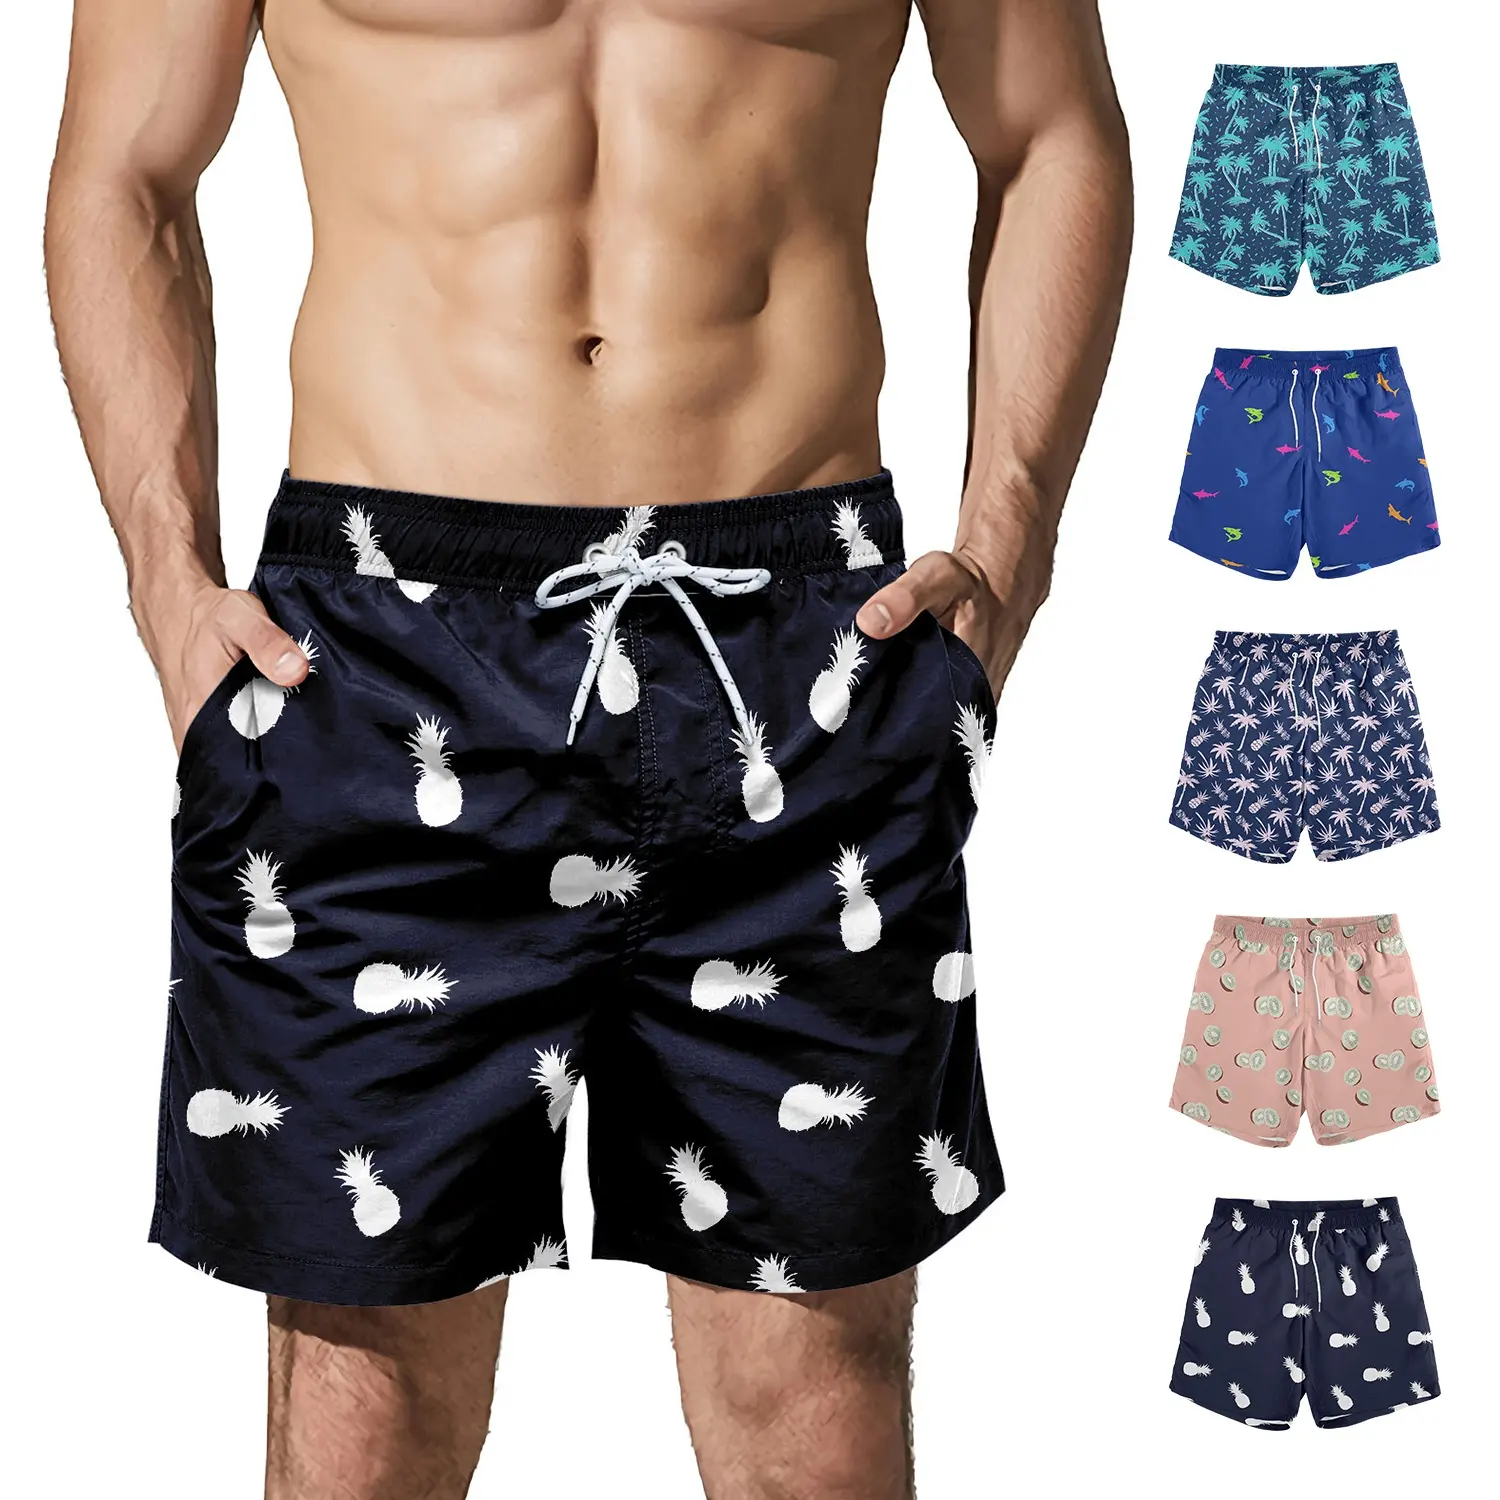 Zomerkleding Heren Shorts Custom Badmode En Strandkleding Boardshorts Heren Snel Droog Shorts Zwembroek